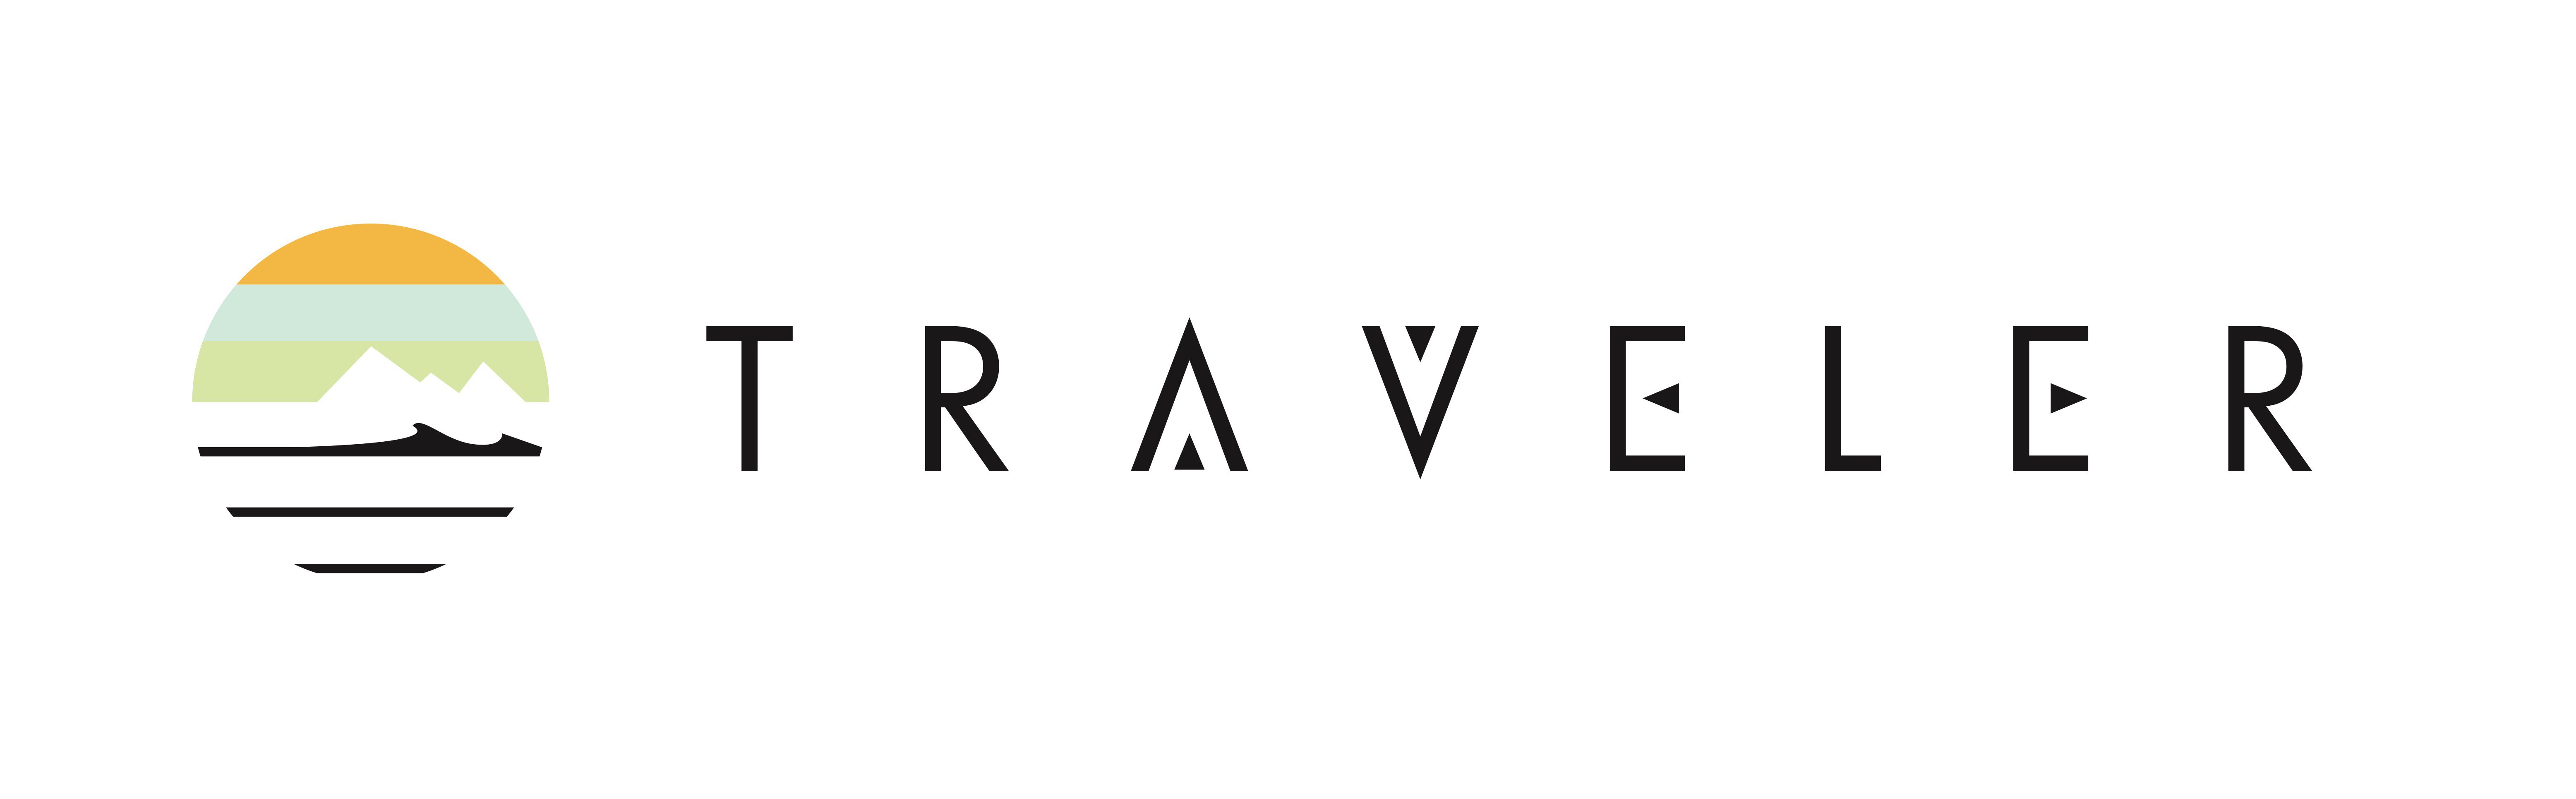 Trademark Logo TRAVELER